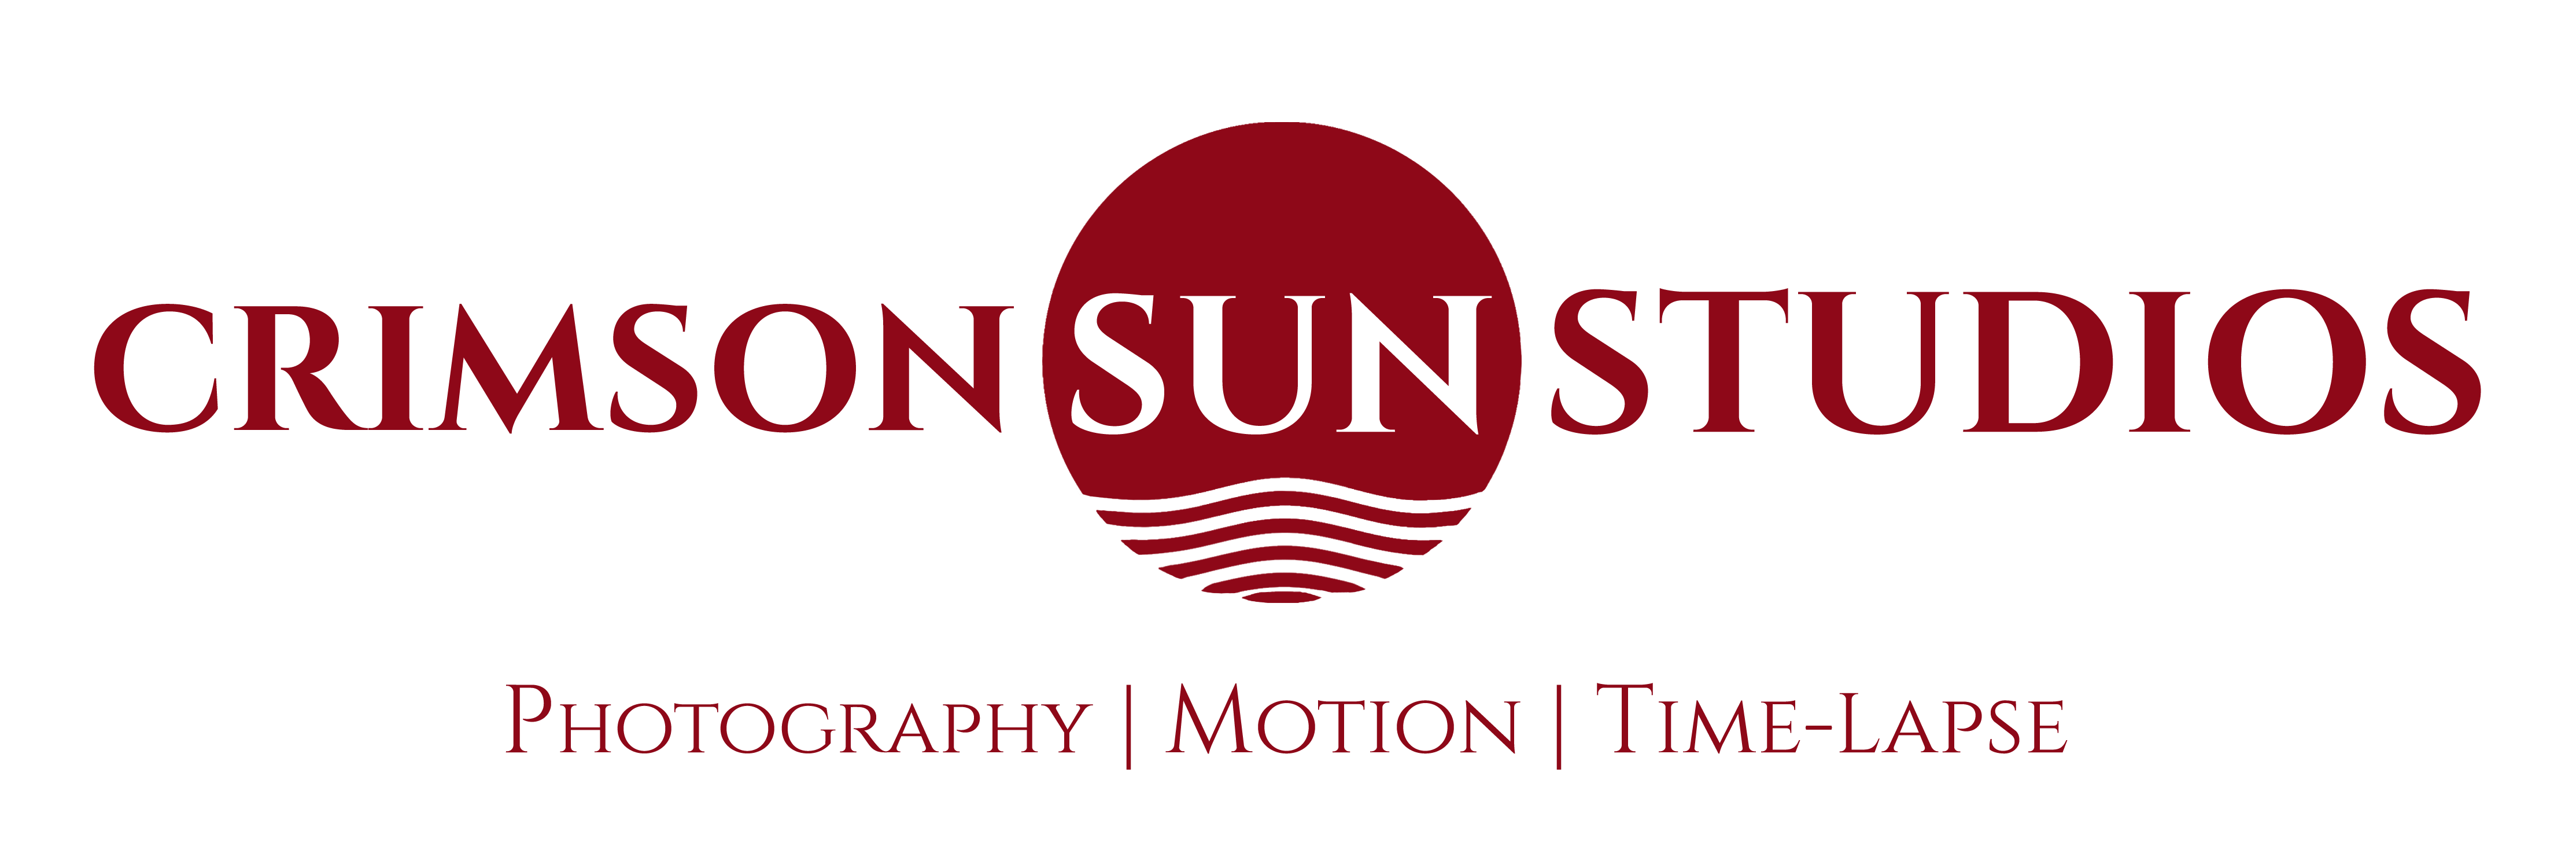 Crimson Sun Studios